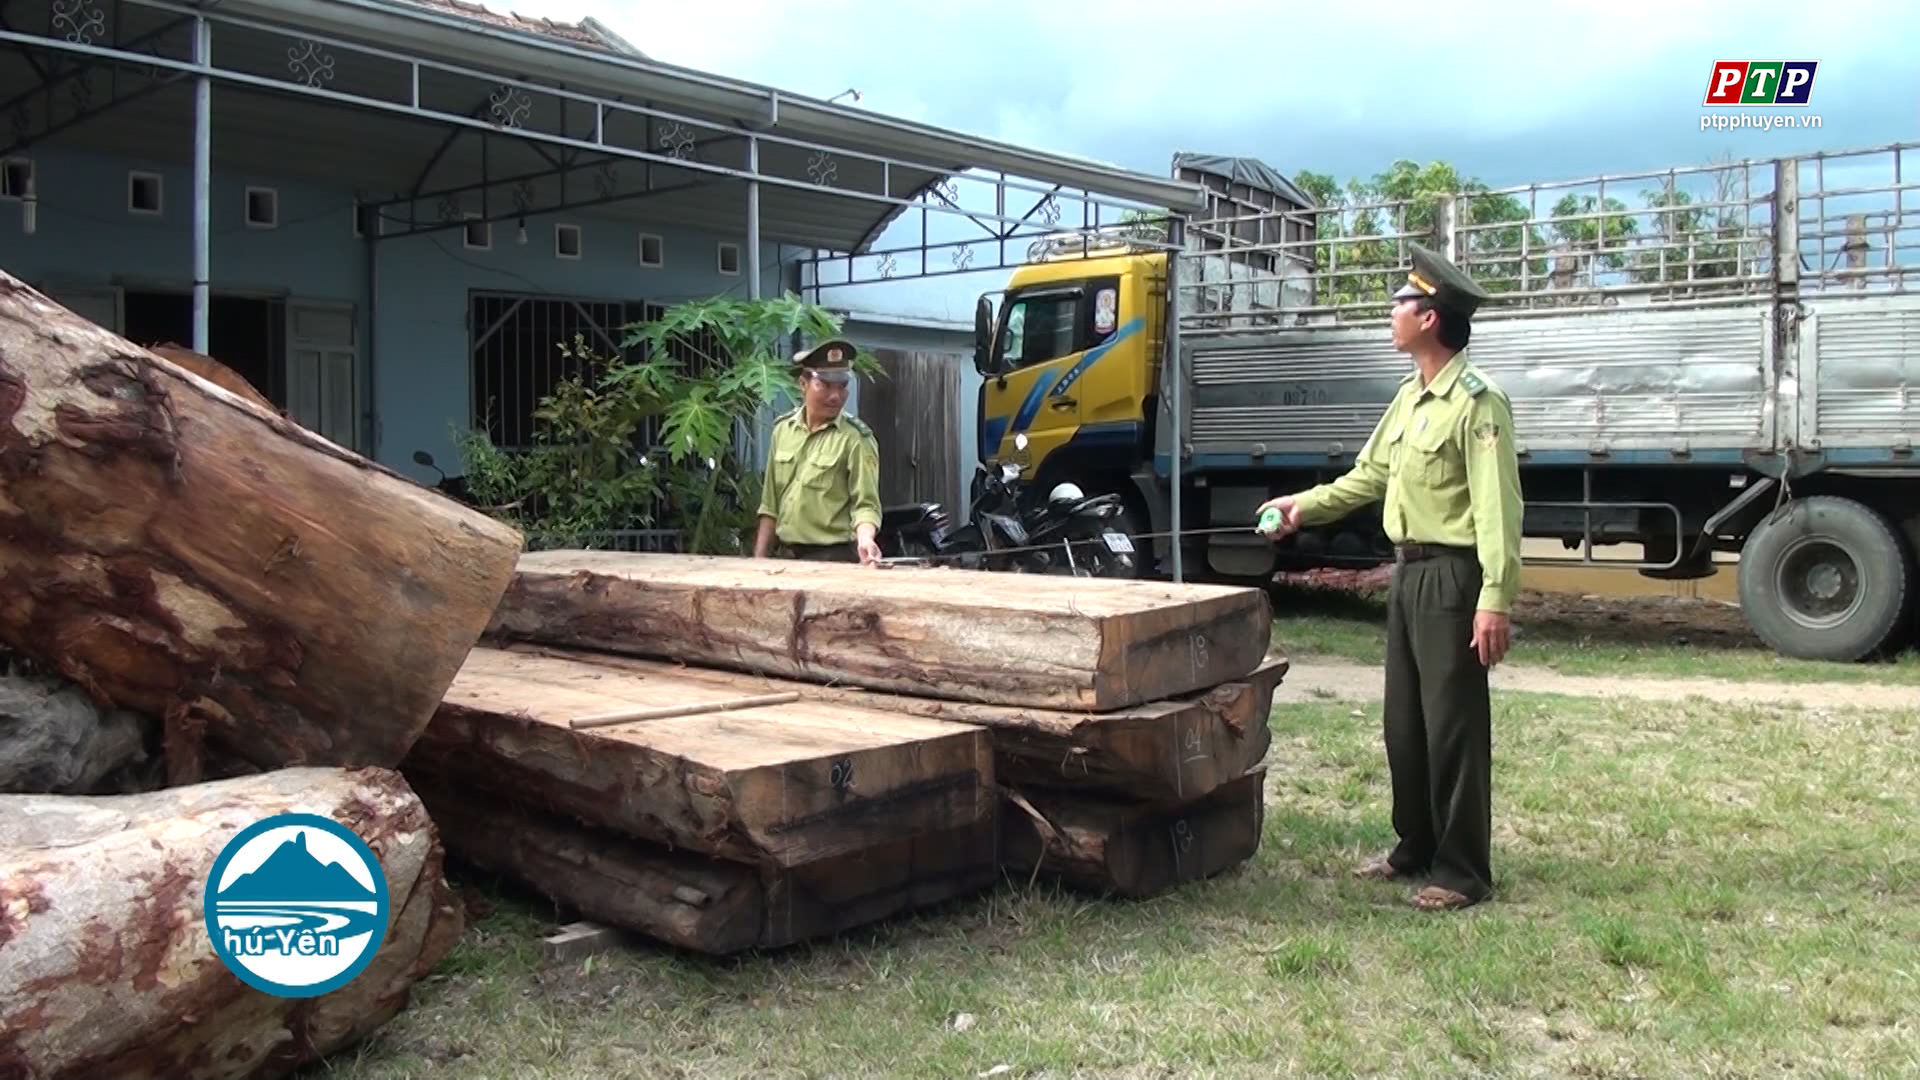 Sông Hinh: Tạm giữ xe tải chở gỗ không rõ nguồn gốc